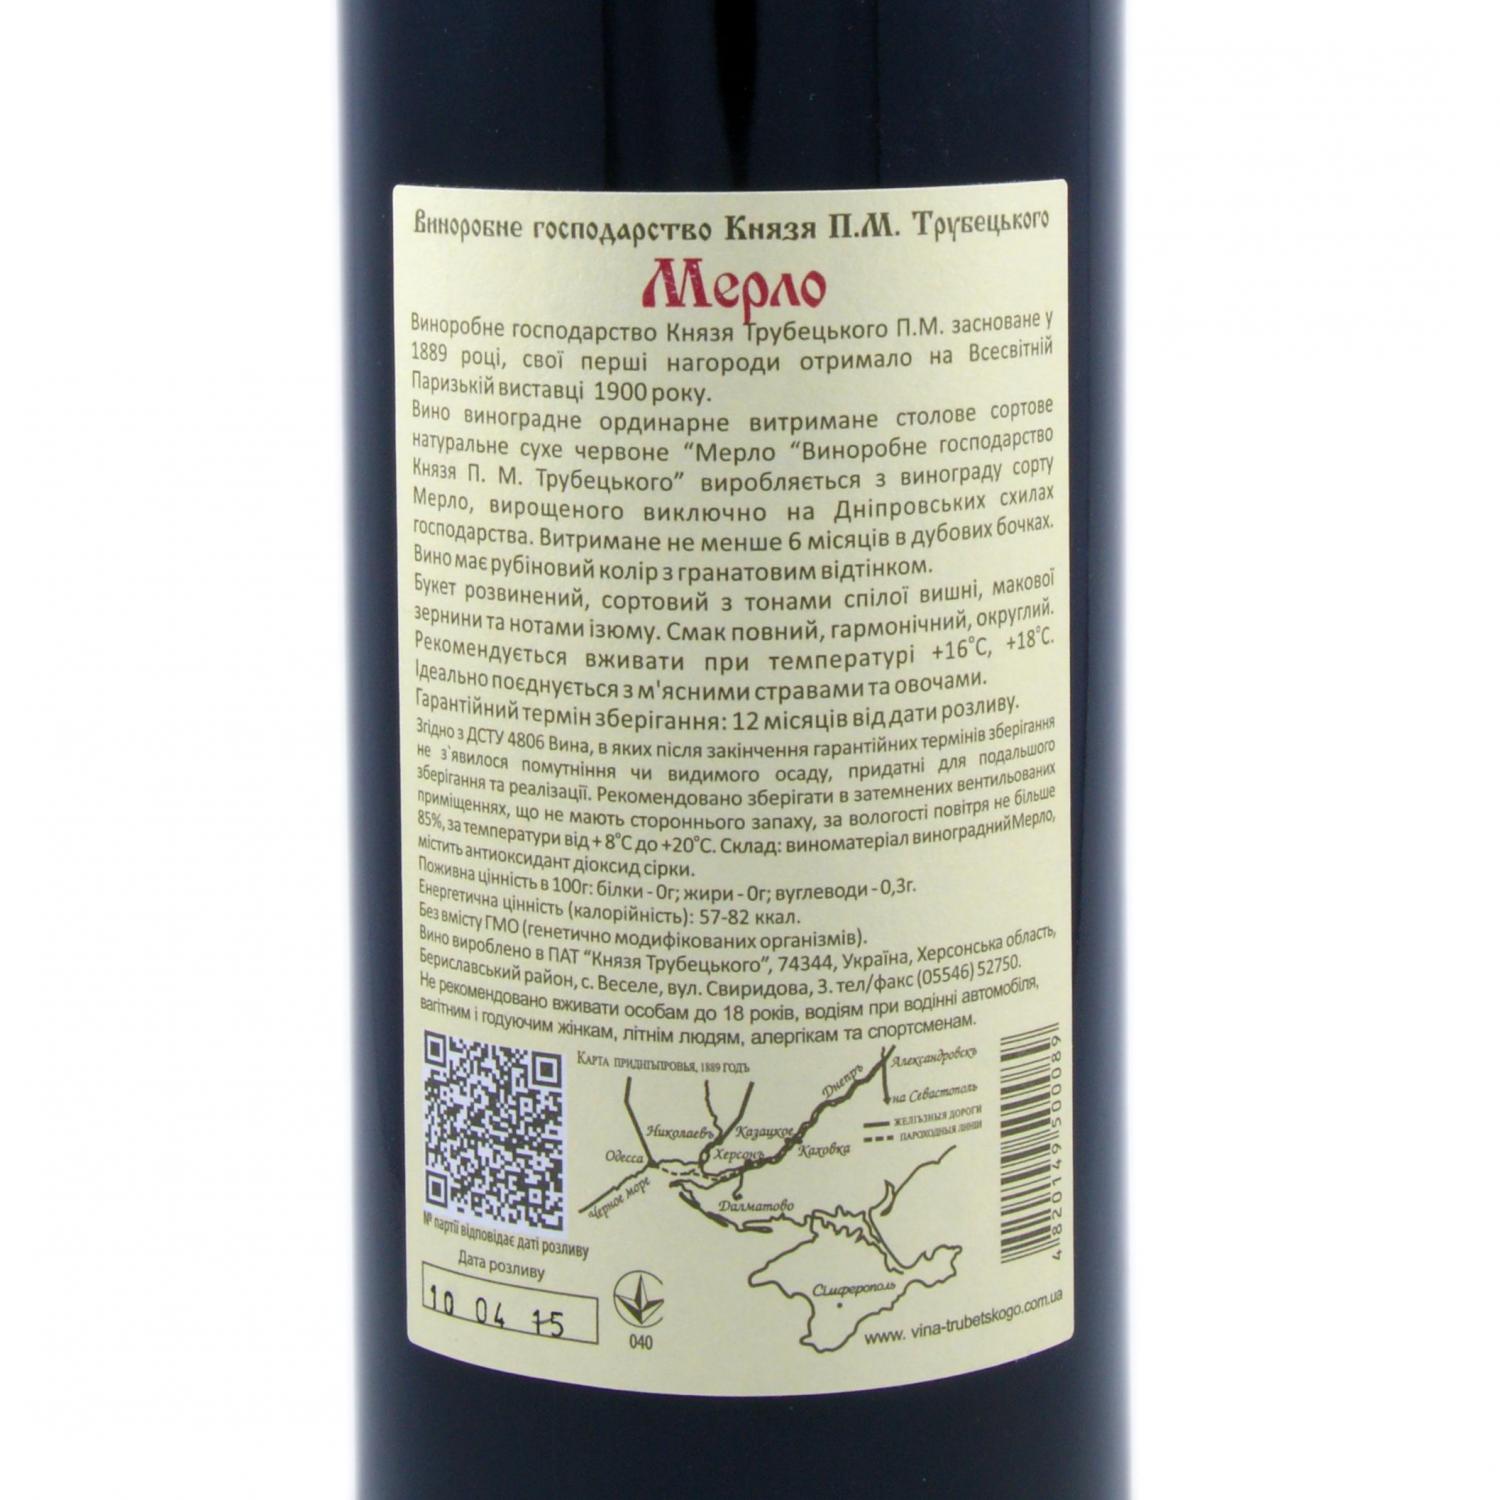 Вино Князь Трубецькой Мерло червоне сухе витримане, 10-14%, 0,75 л (574846) - фото 3